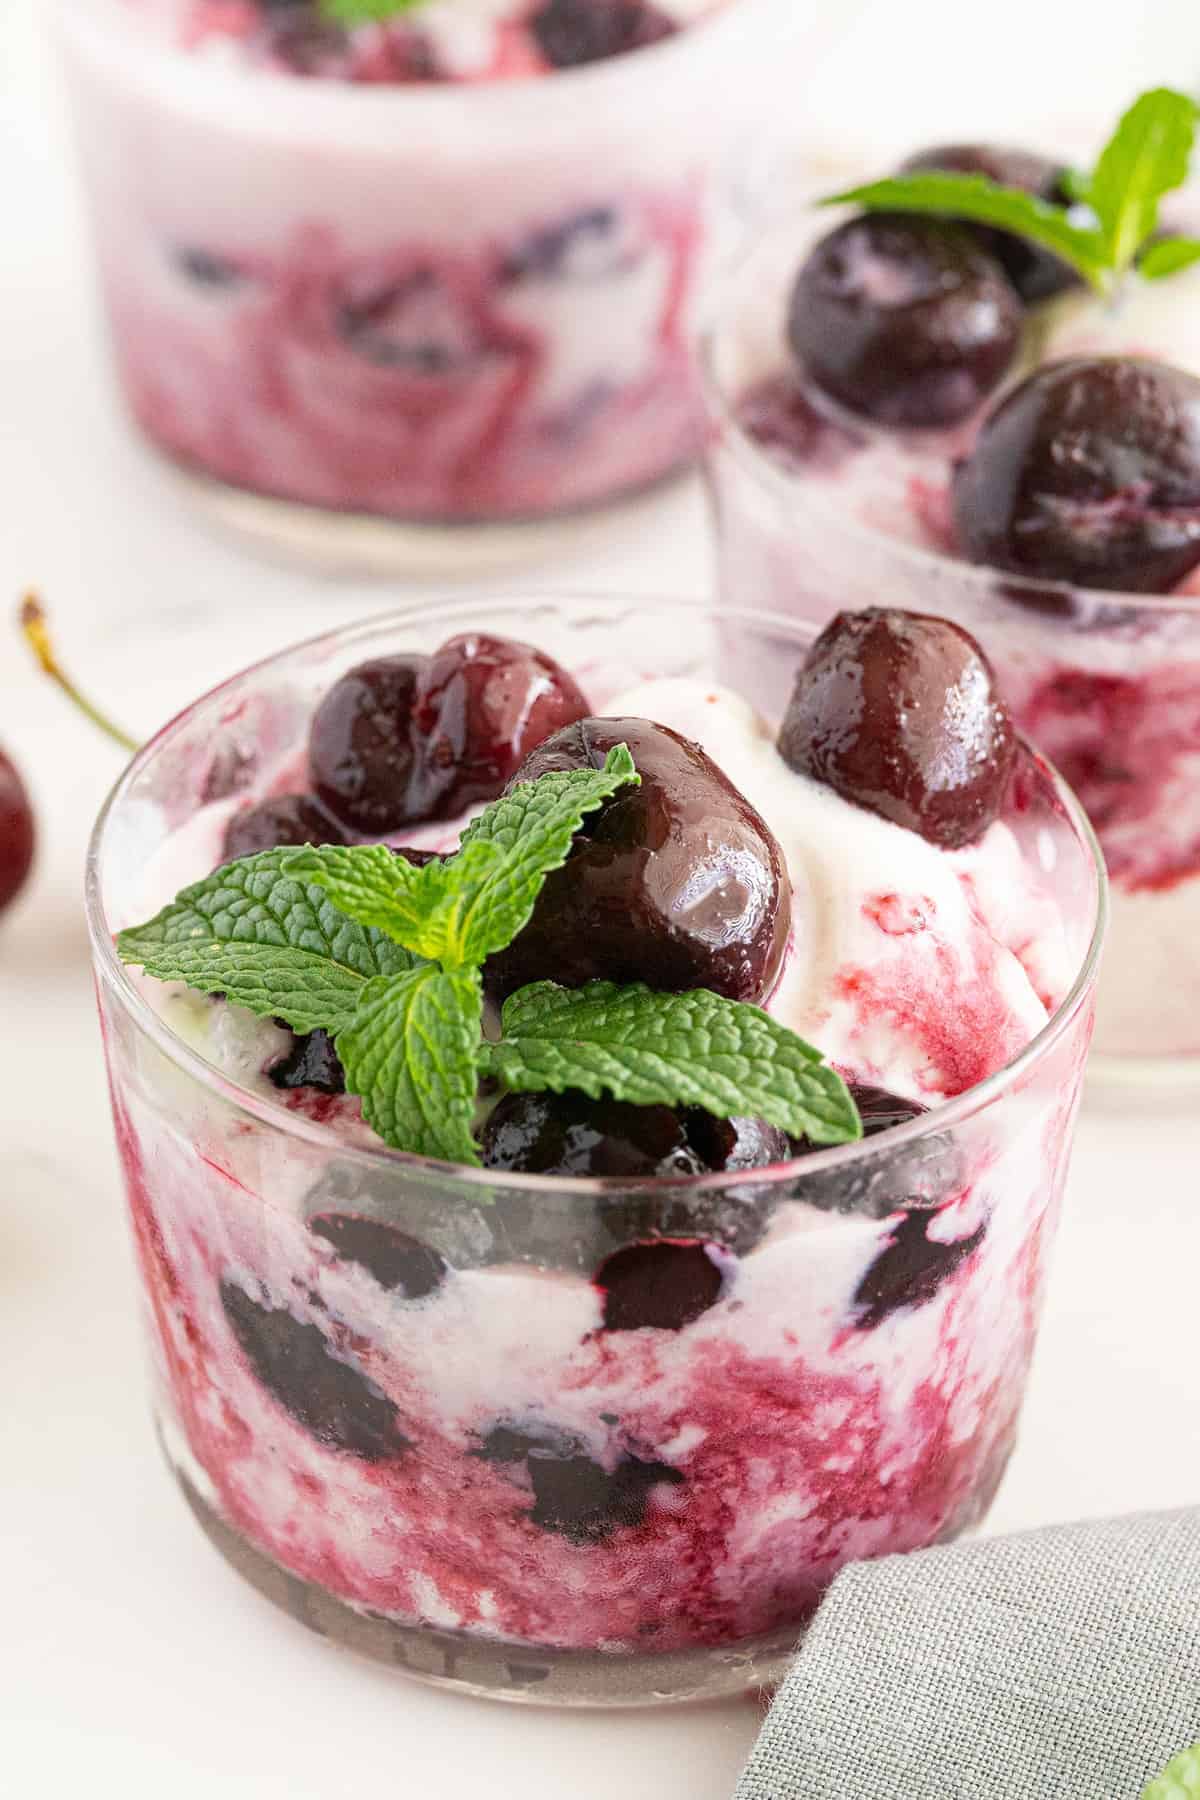 Yogurt Parfaits with Homemade Maraschino Cherries Recipe